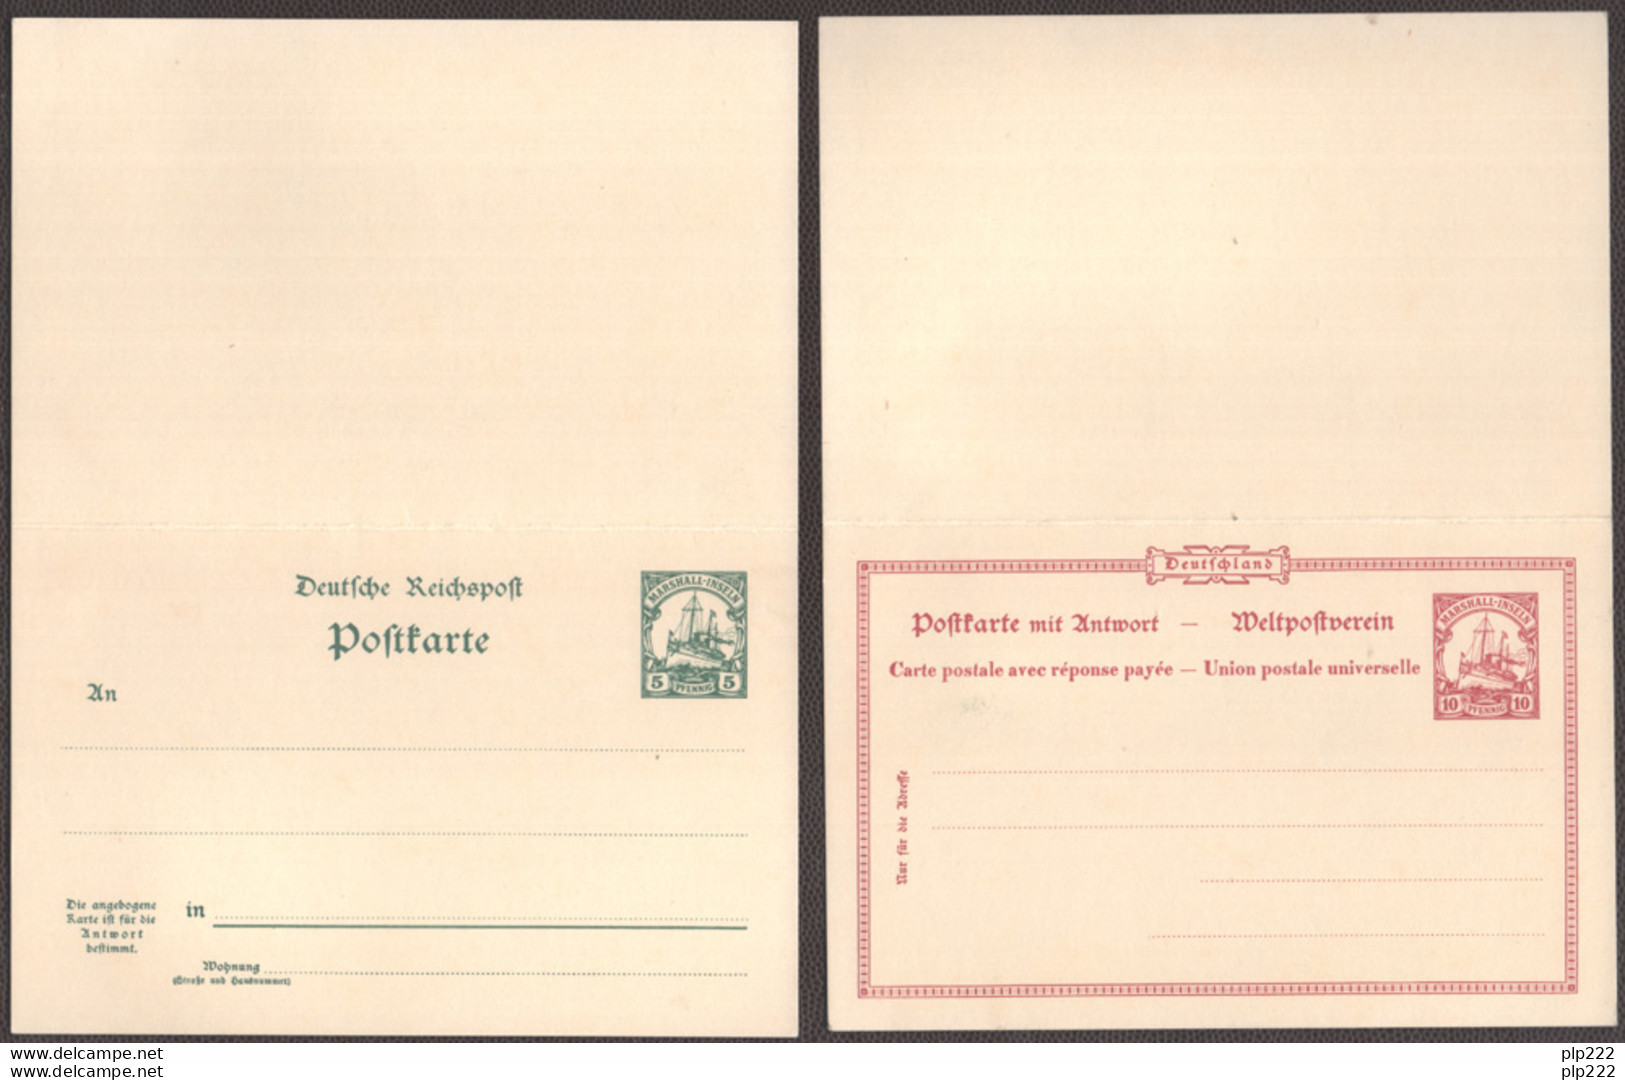 Isole Marshall 1900 2 Postal Card "Postkarte" 5-10pf. Risposta Pagata - Paid Response VF - Marshall